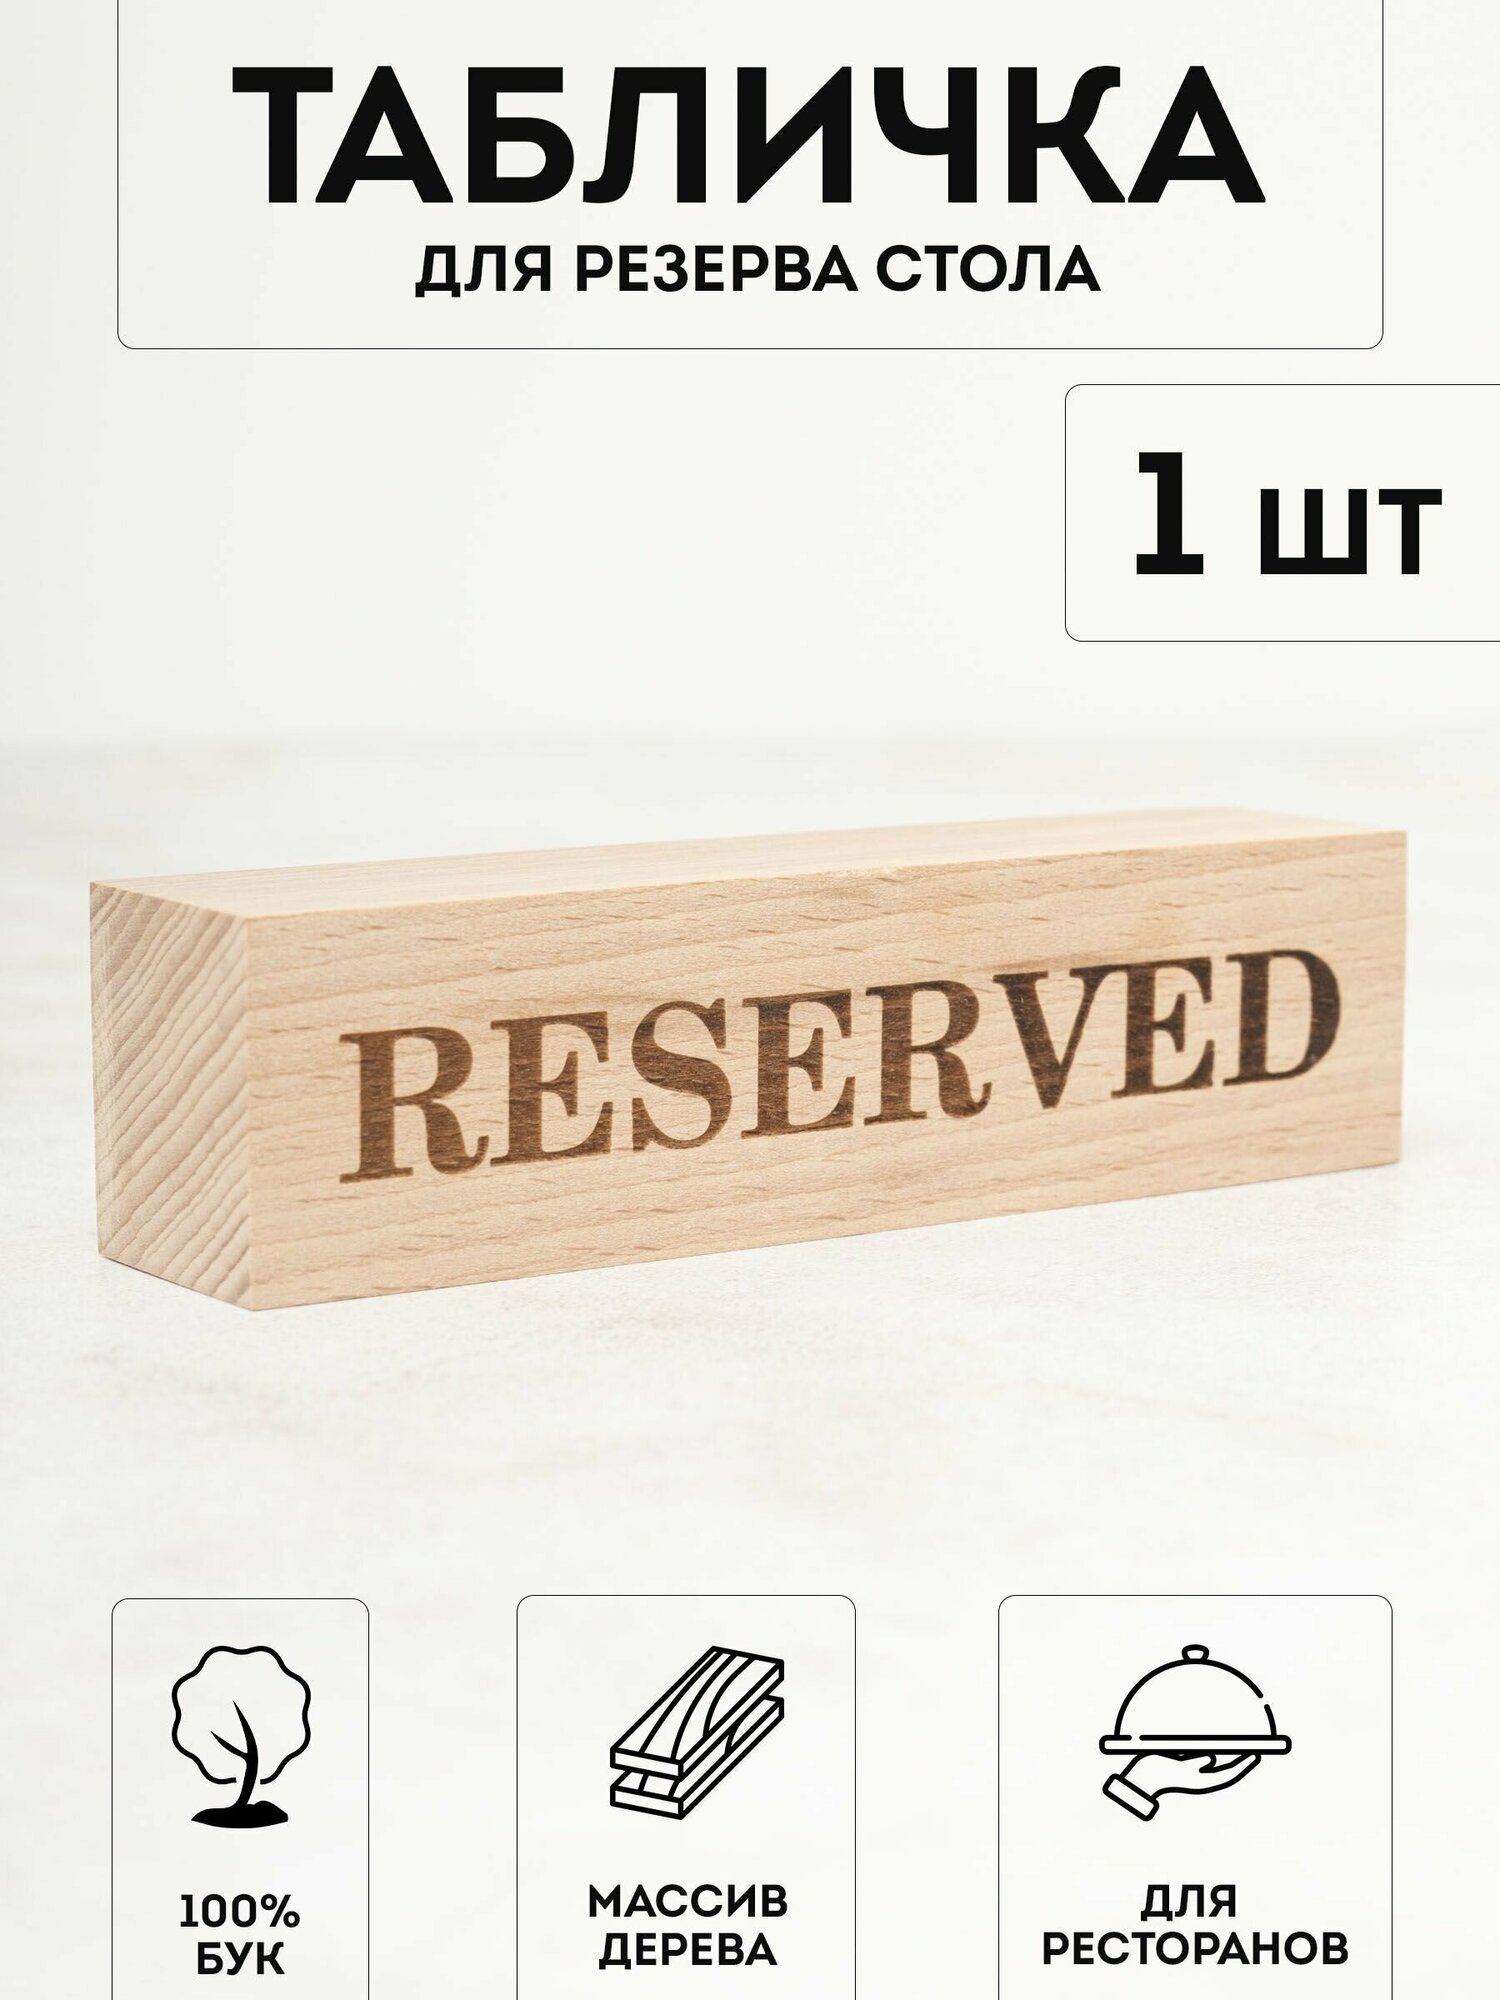 Настольная табличка деревянная RiForm "Reserved / зарезервировано / забронировано" двухсторонняя для брони столов в ресторанах кафе барах.